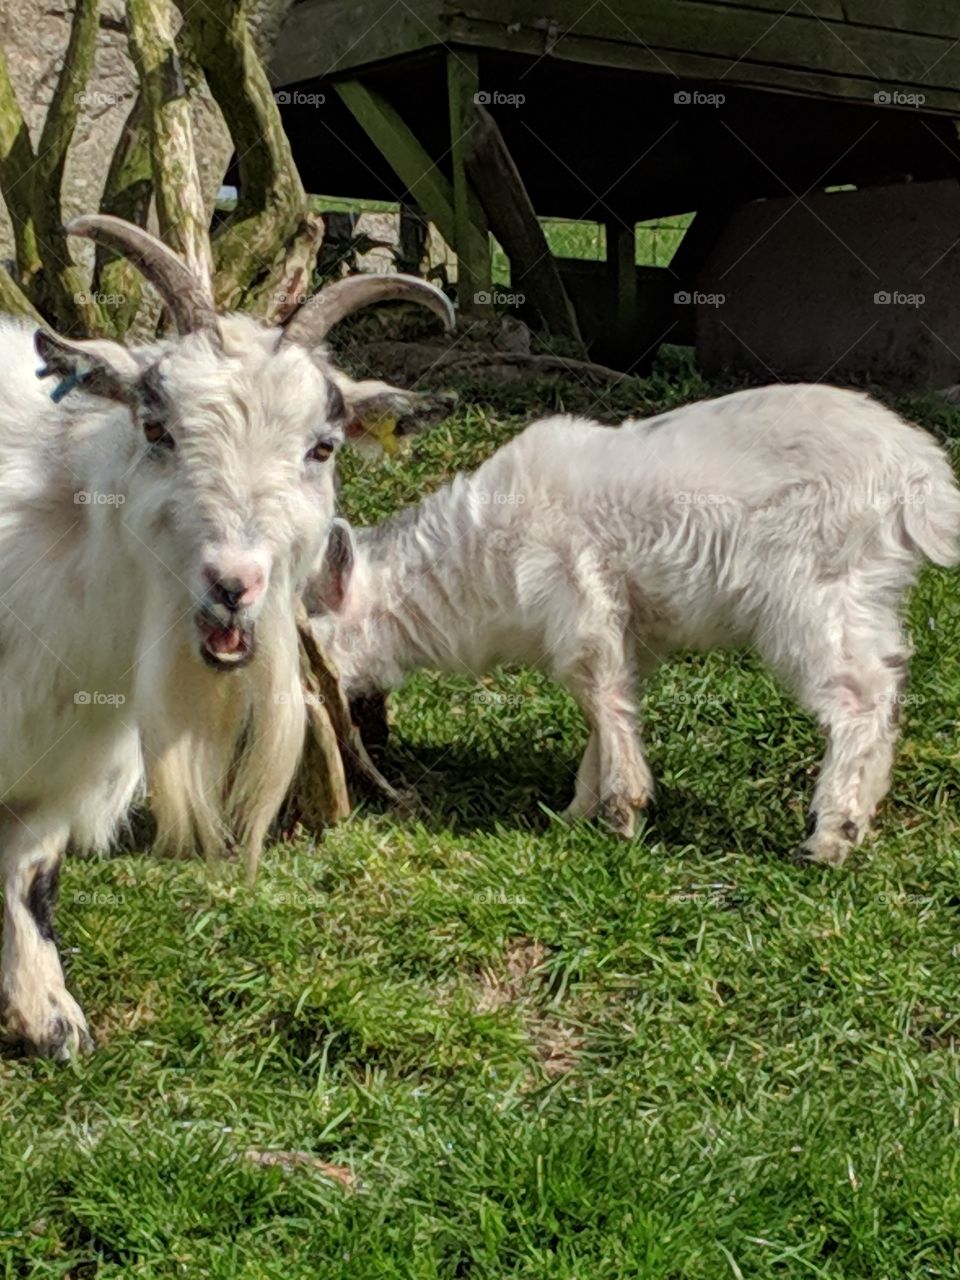 Horned goat and kidd